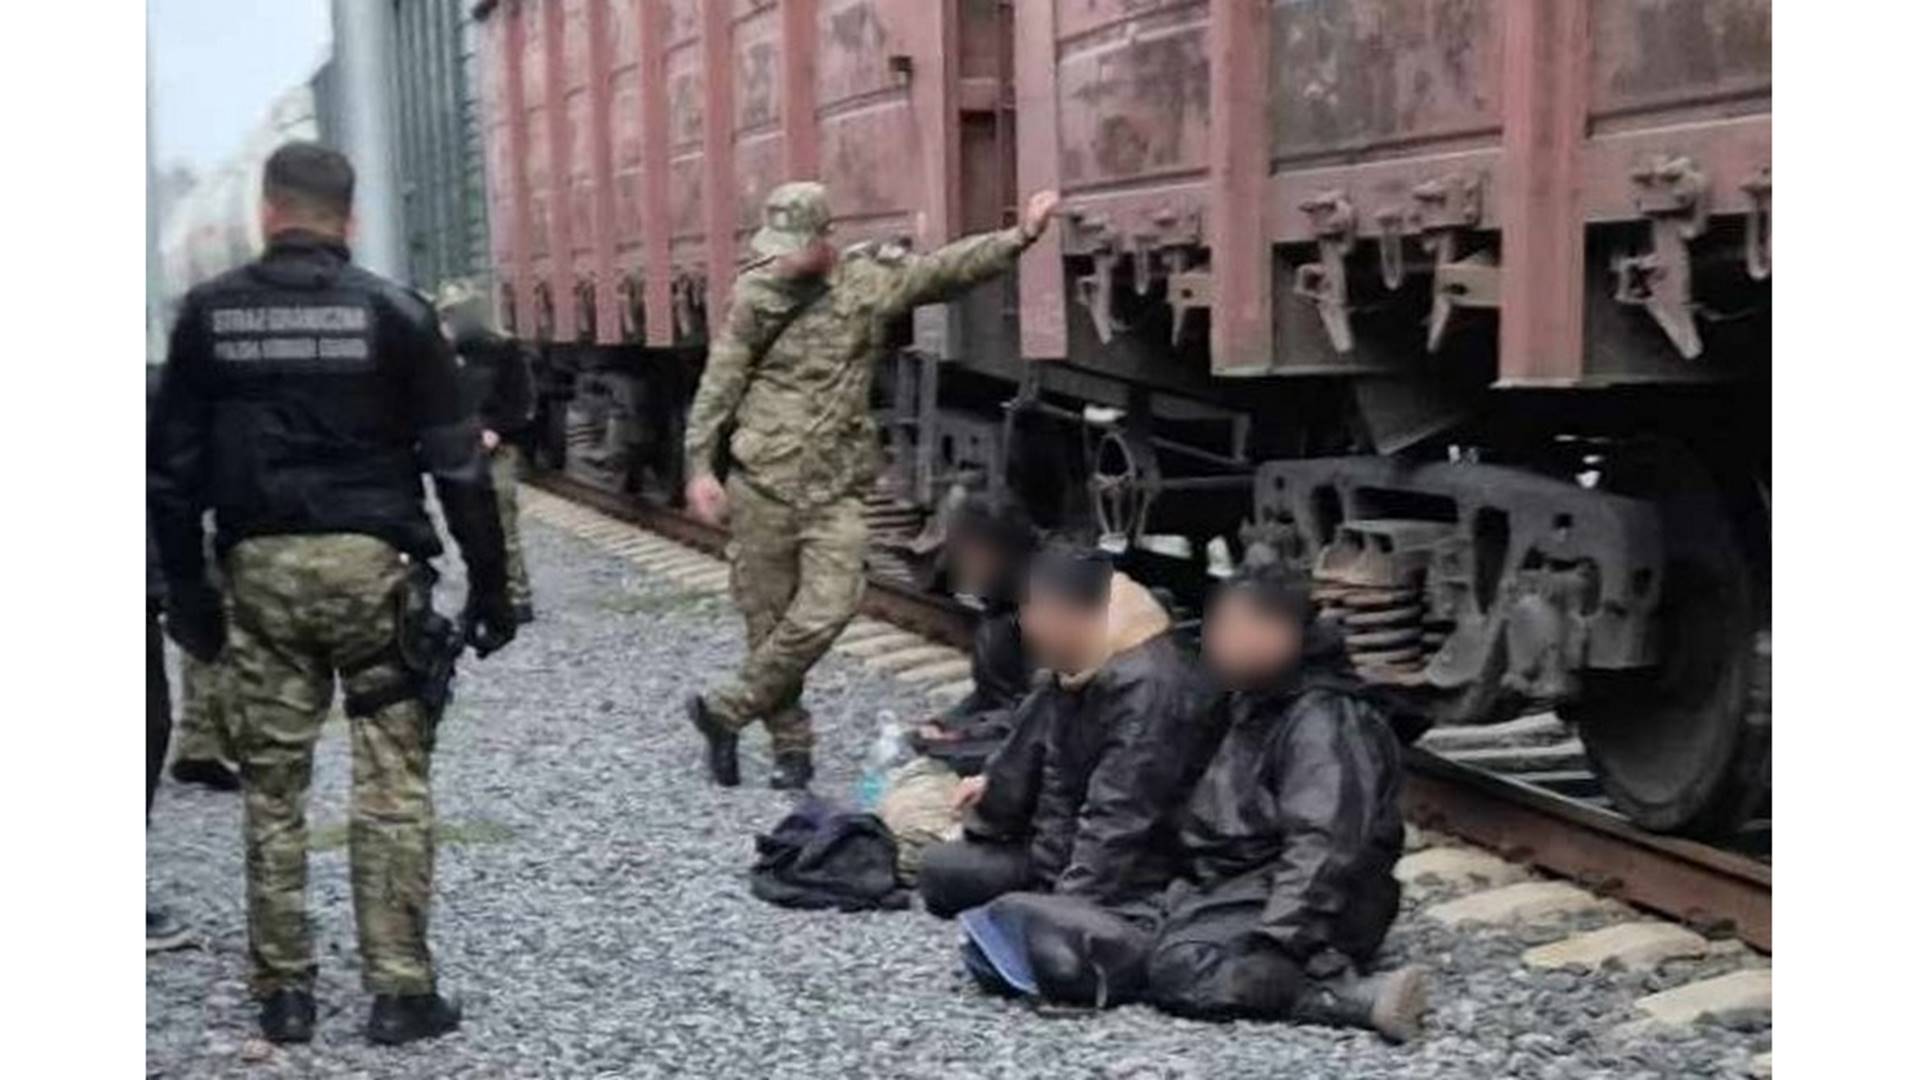 Migranci próbowali nielegalnie przekroczyć polsko-białoruską granicę ukryci w pociągu towarowym, źródło: Podlaski Oddział Straży Granicznej